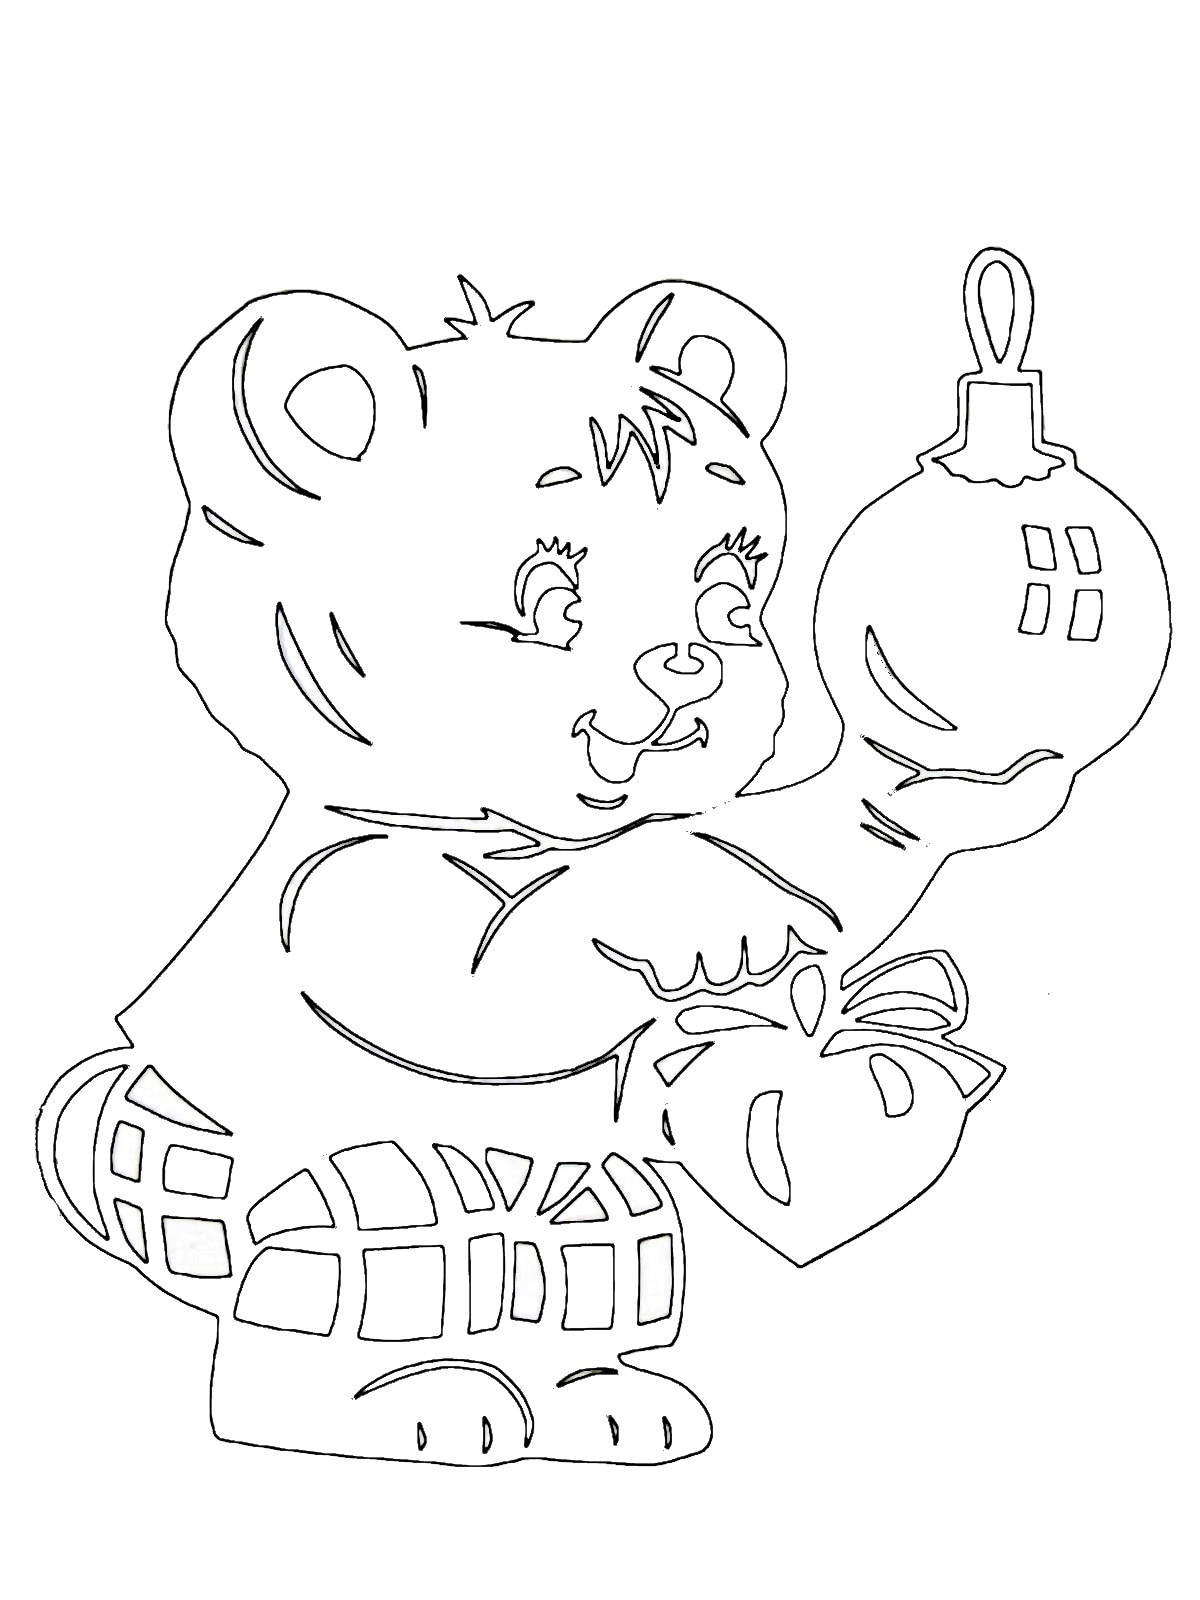 новогодний трафарет на окно медведь и медвежонок 9